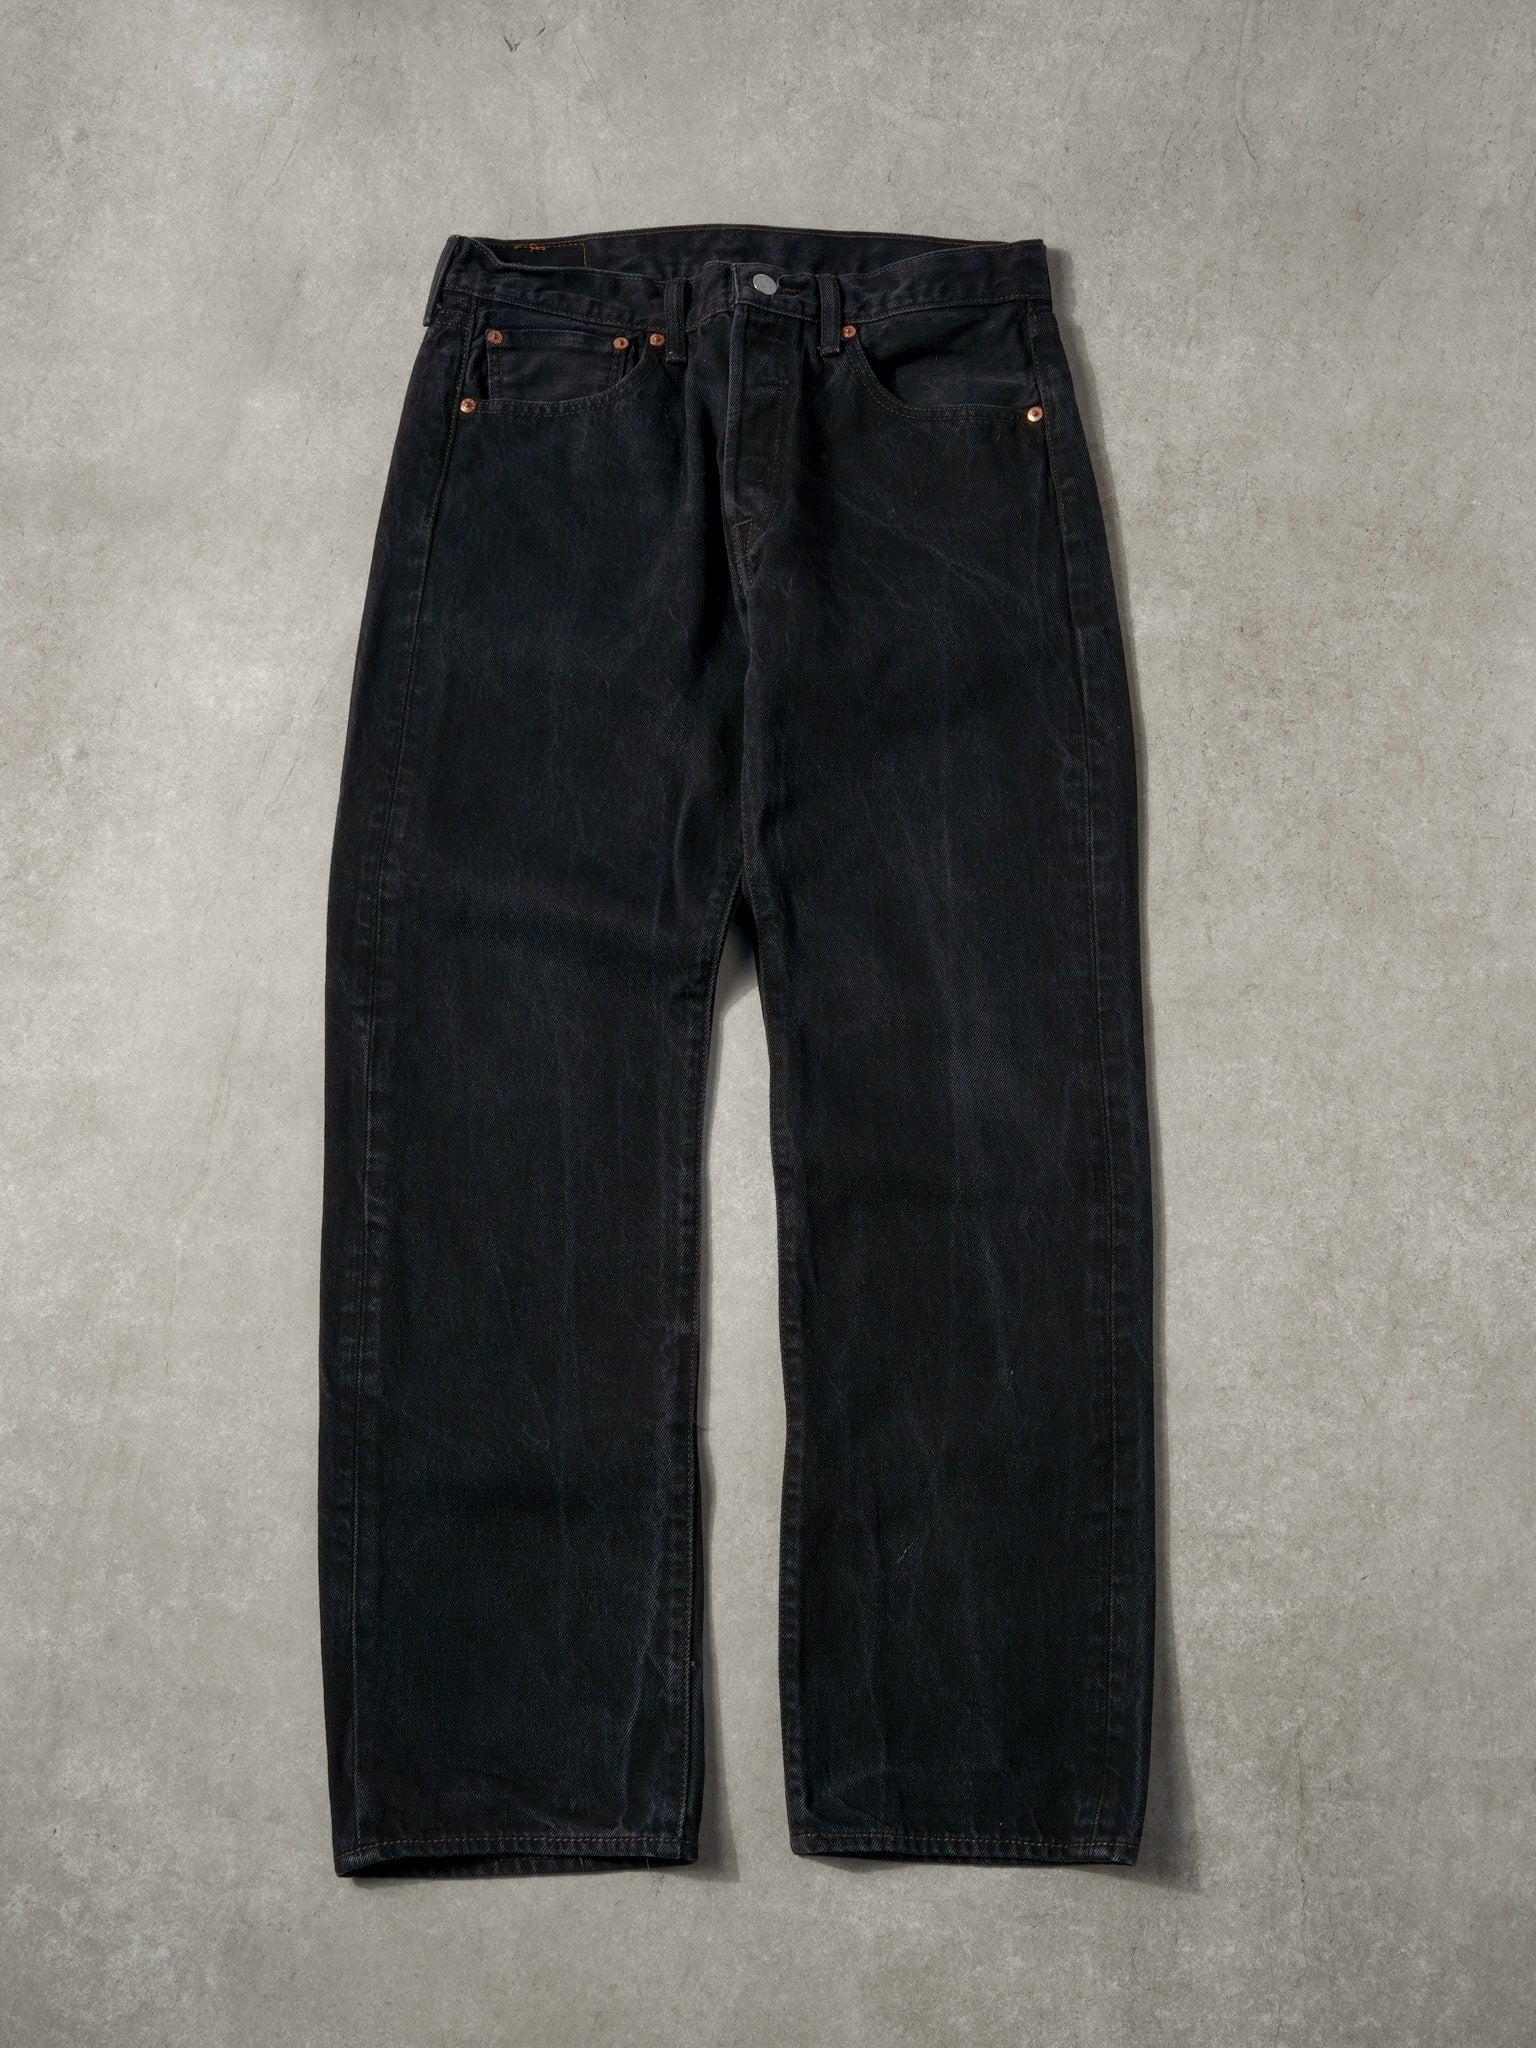 Vintage 90s Black Levi's 510 Denim Jeans (32x30)